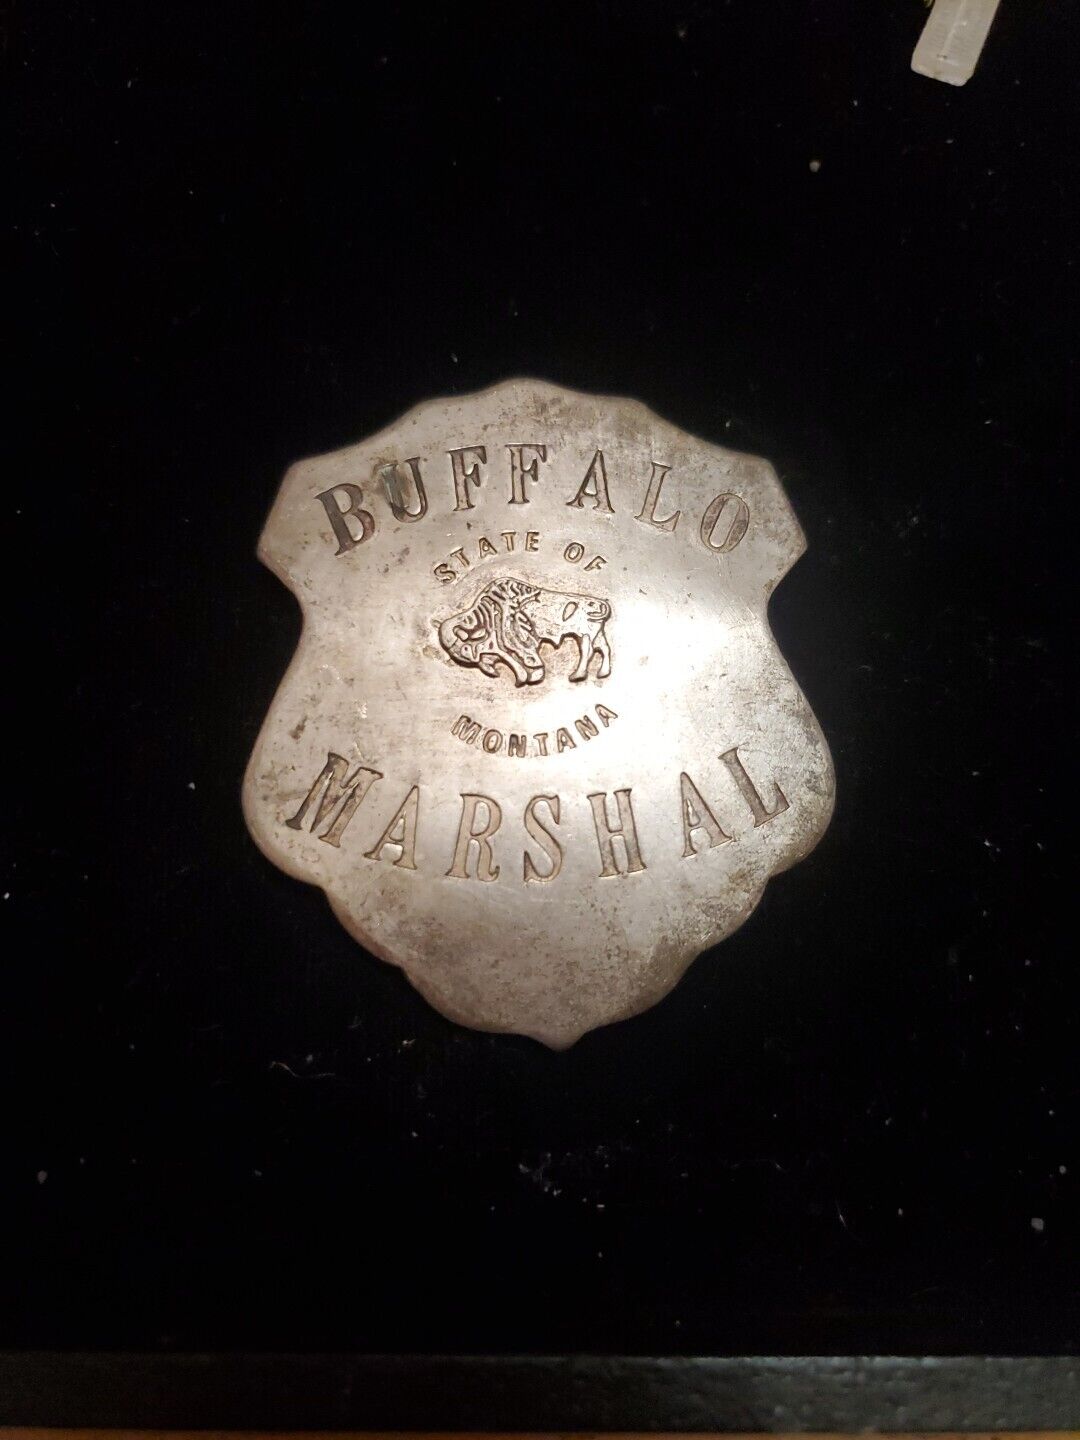 Vintage Buffalo Marshall State of Montana Badge